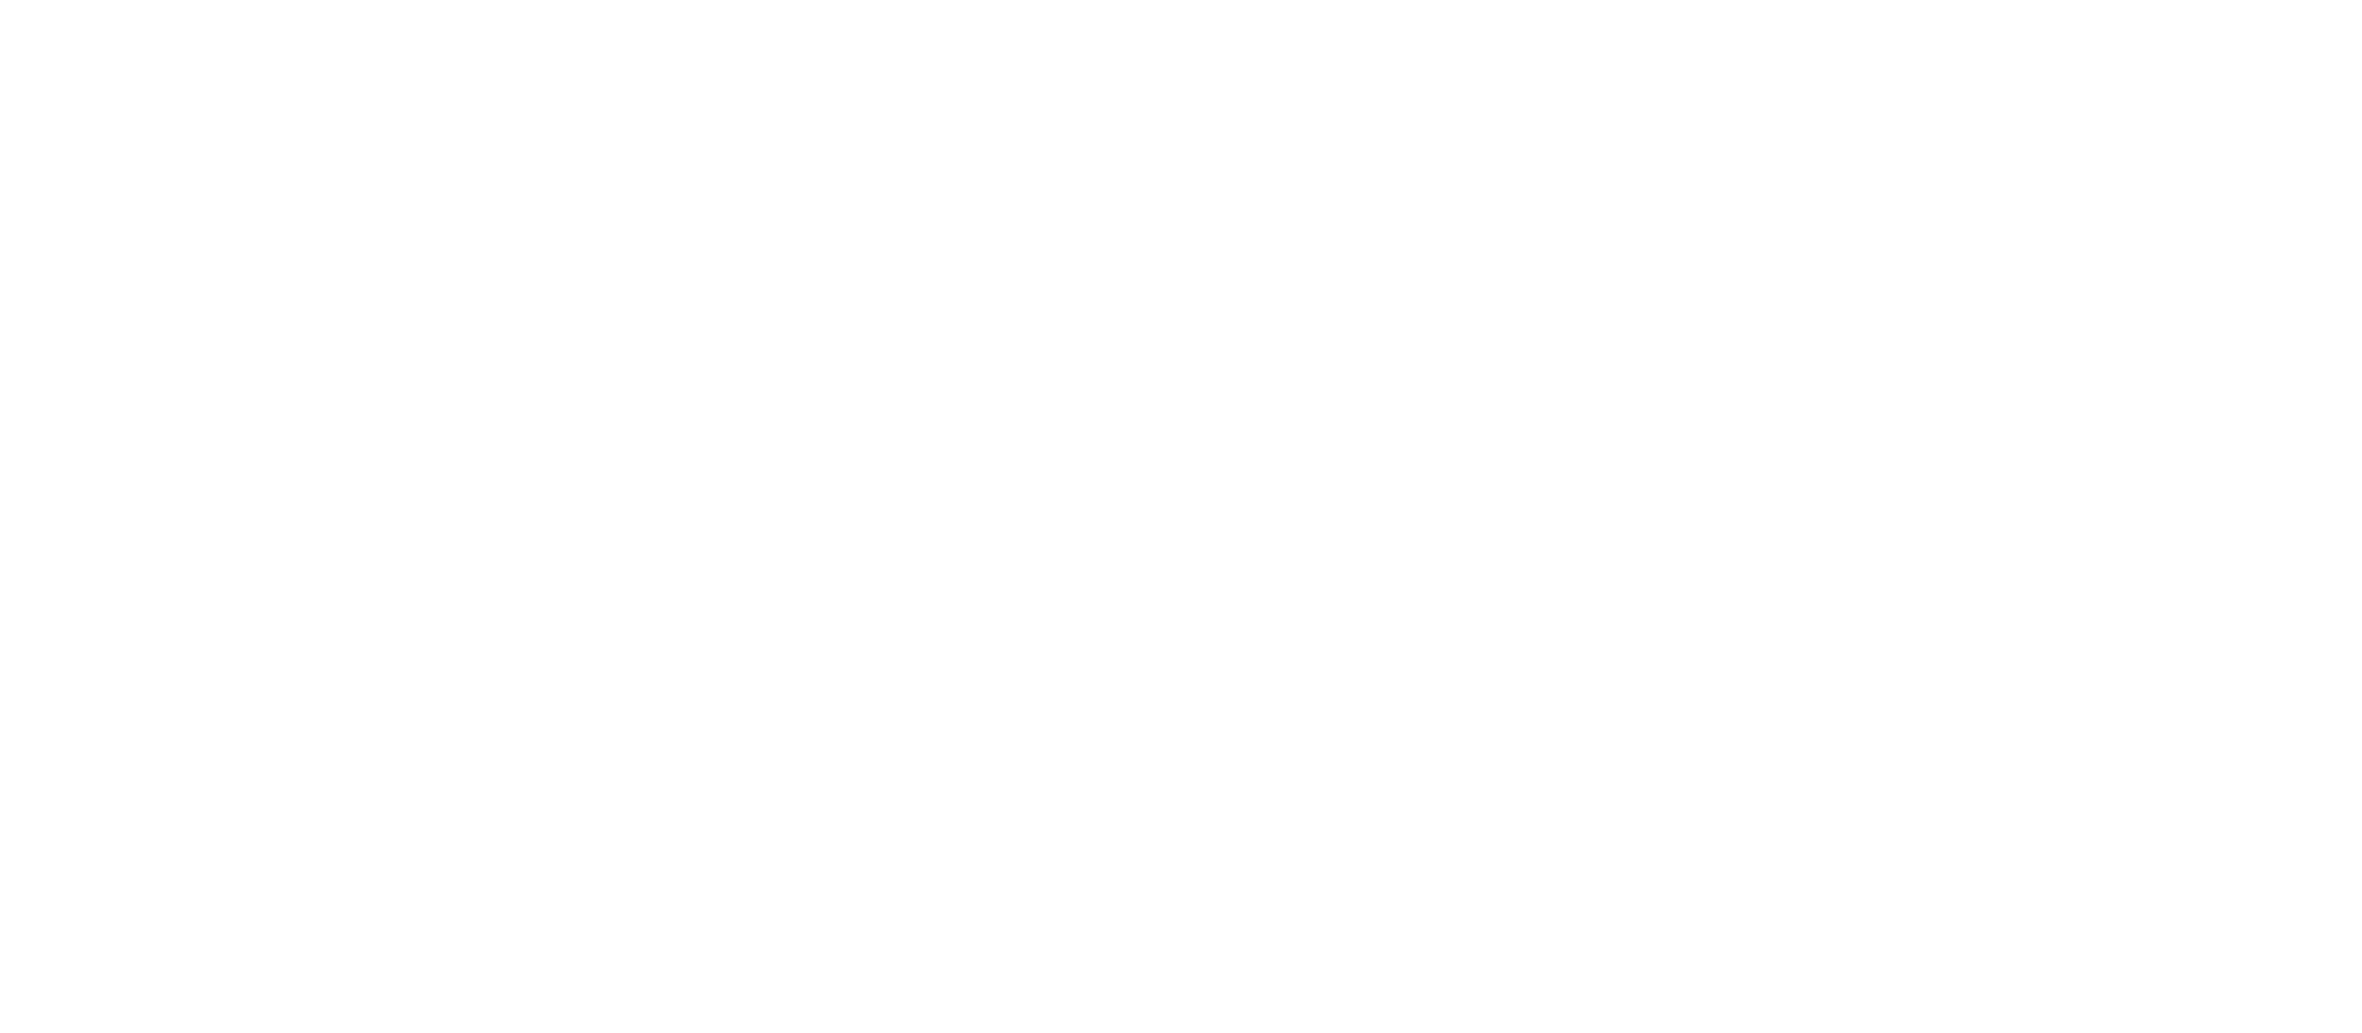 Focke-Museum